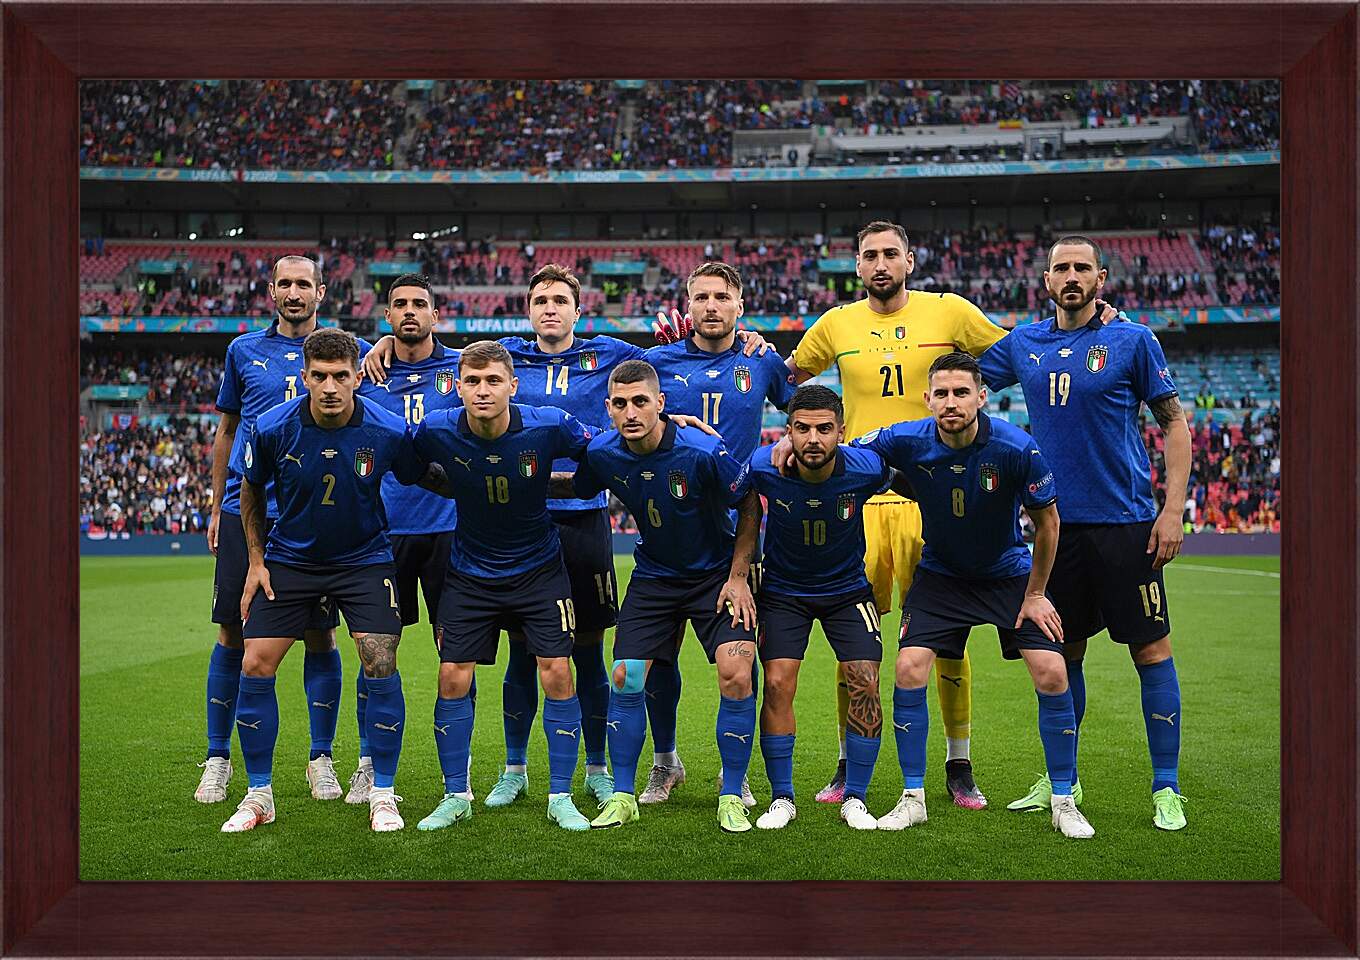 Картина в раме - Фото перед матчем сборной Италии по футболу